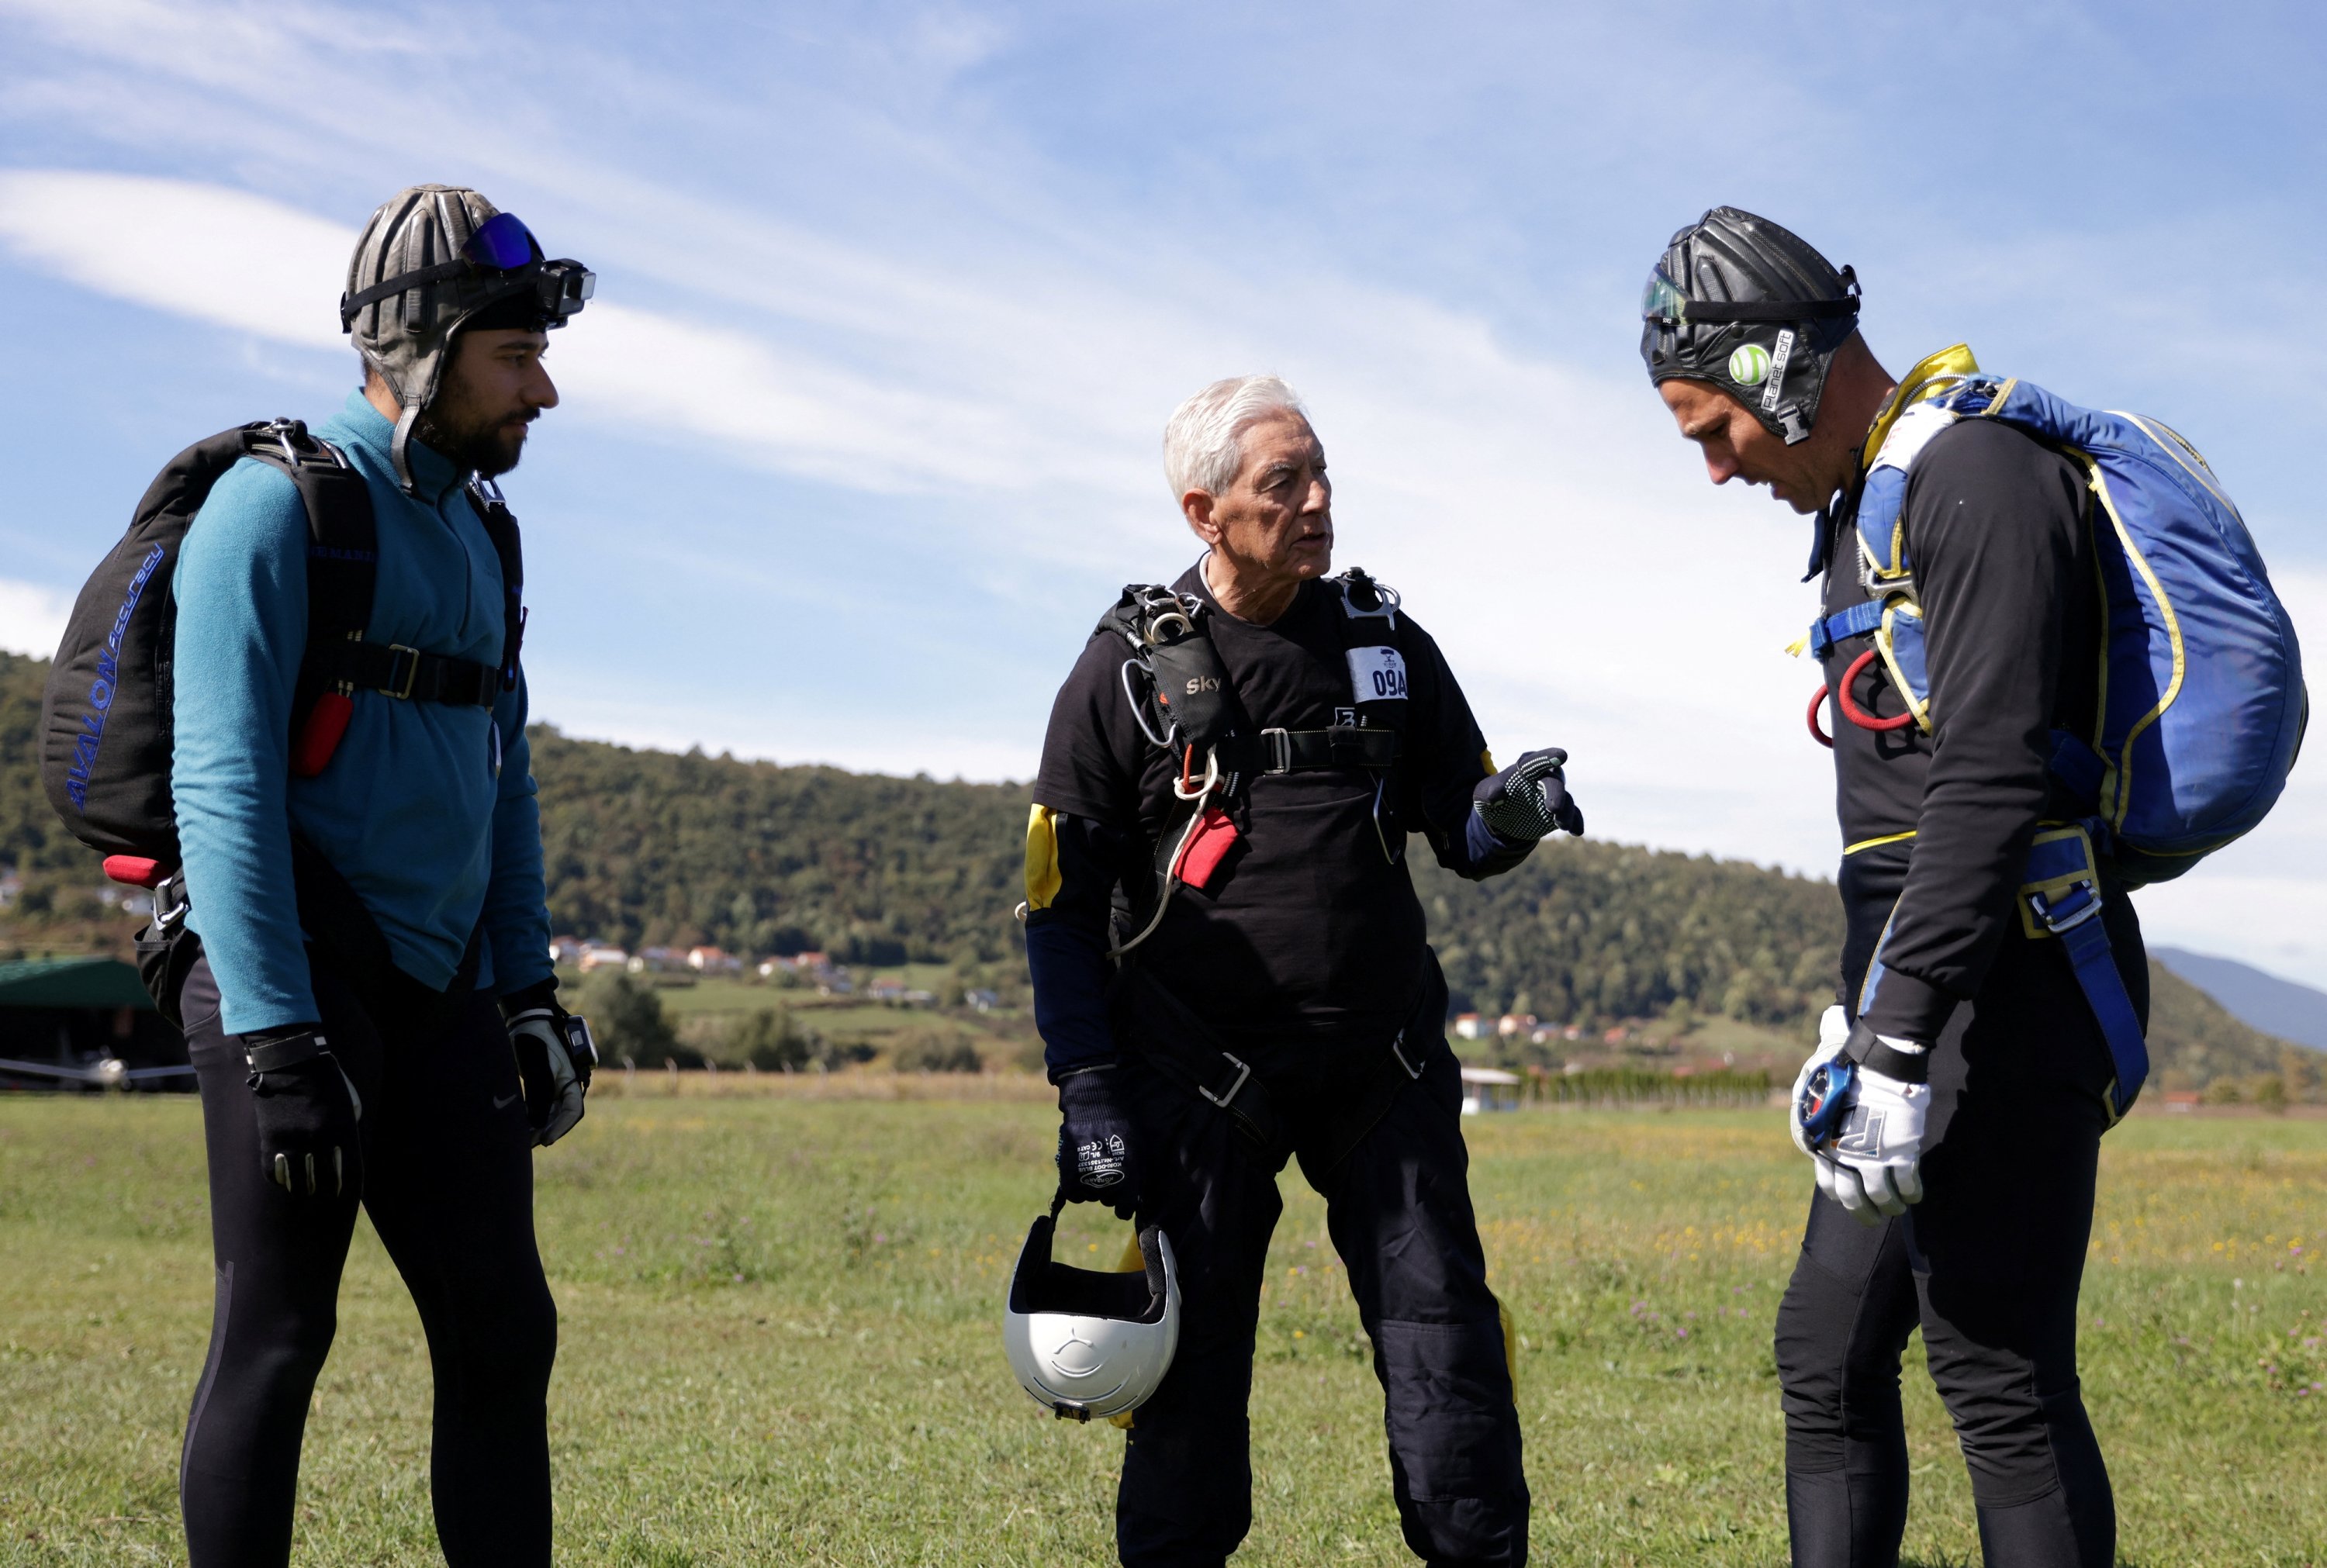 Ibrahim Kalesic, penerjun payung berusia 88 tahun, berbicara dengan teman-temannya sebelum melompat selama Para Challenge Cup di Bihac, Bosnia-Herzegovina, 24 September 2022. (Foto Reuters)